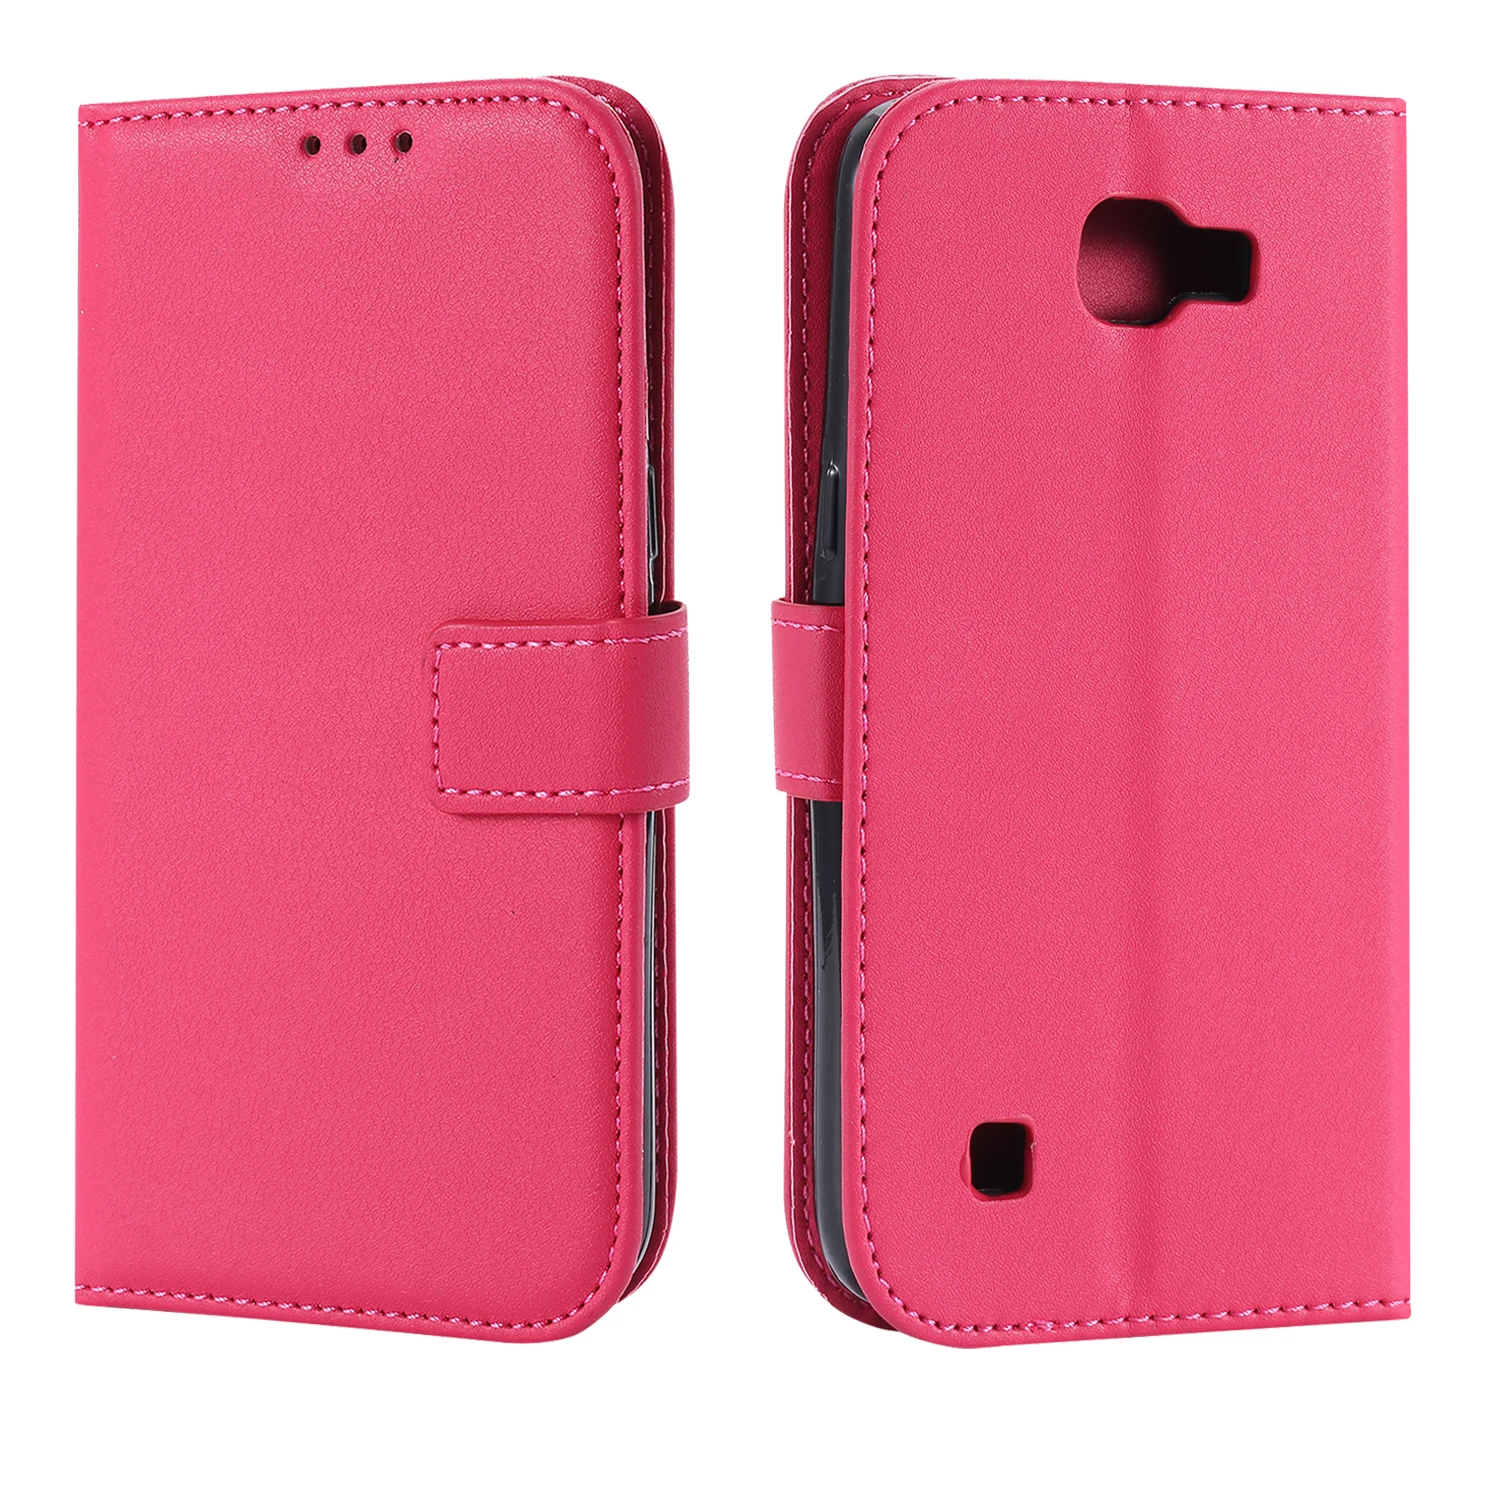 Чехол-бумажник с откидной крышкой для LG K4 LTE K 120E 121 130 130E кожаный чехол телефона K120E